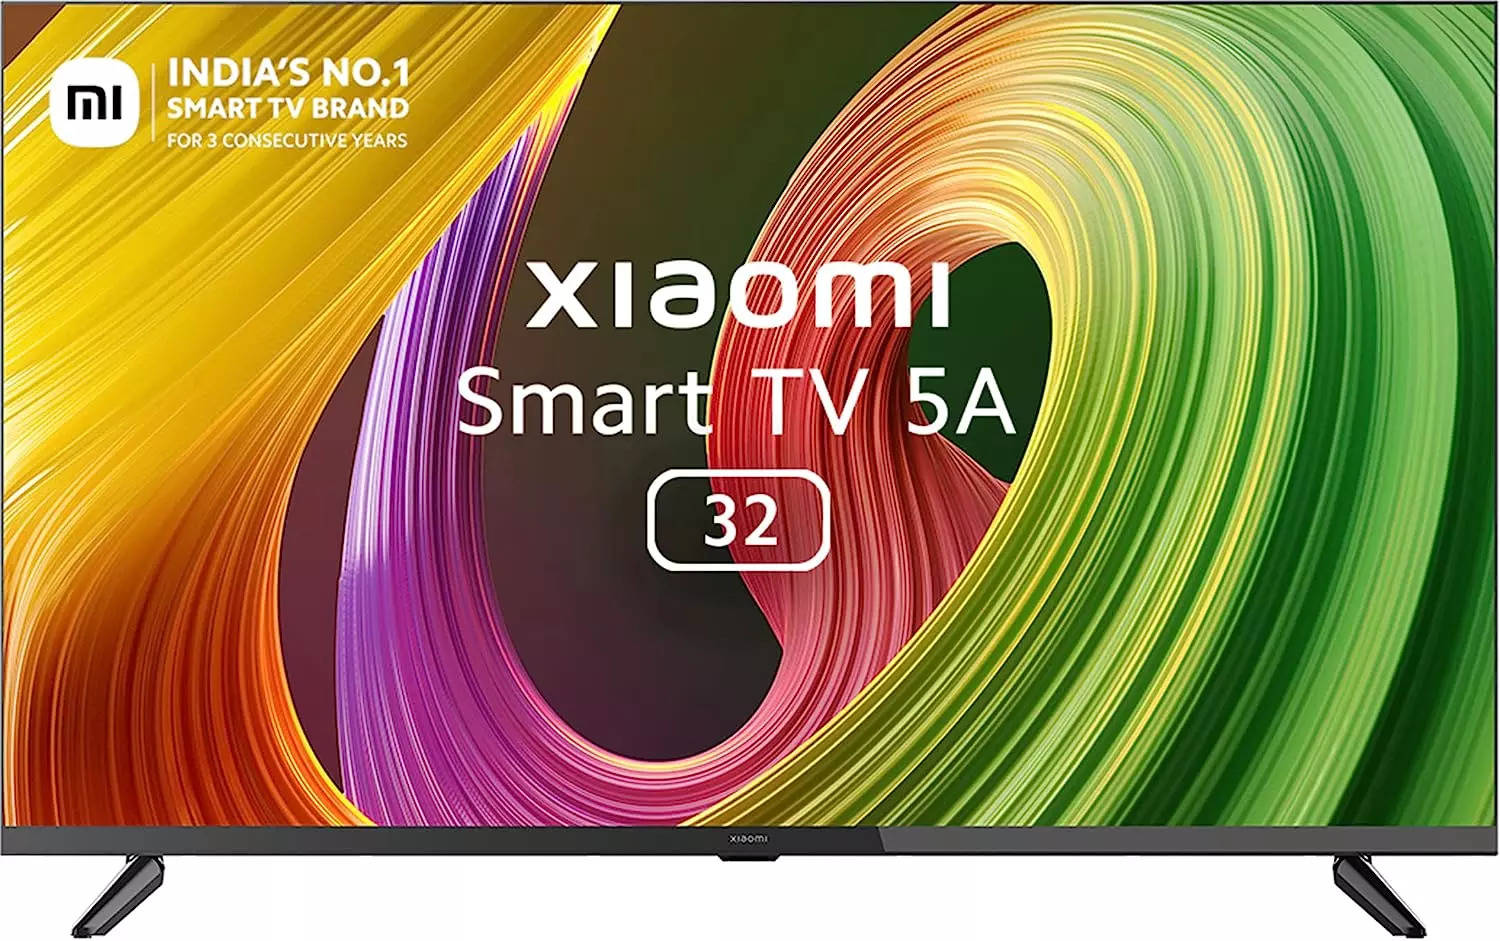 Xiaomi Smart TV A Series 